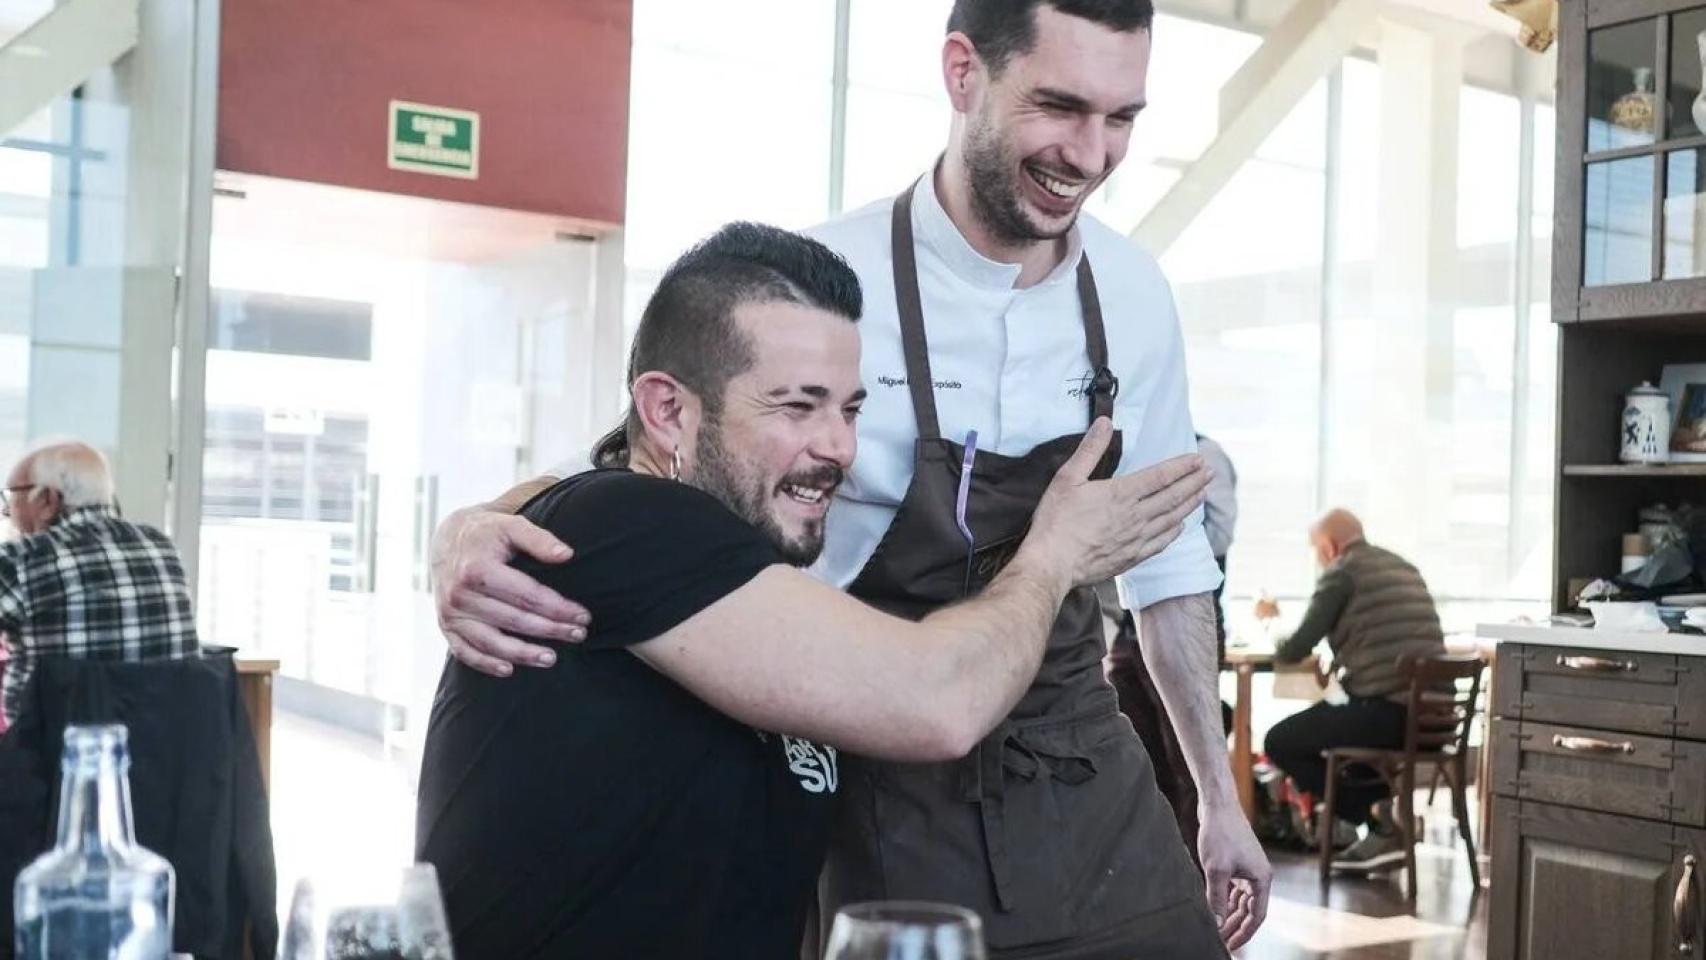 El 90 % del alumnado de hostelería de inserción del chef Carlos Maldonado encuentra empleo. Foto Hugo Palotto / Guía Repsol